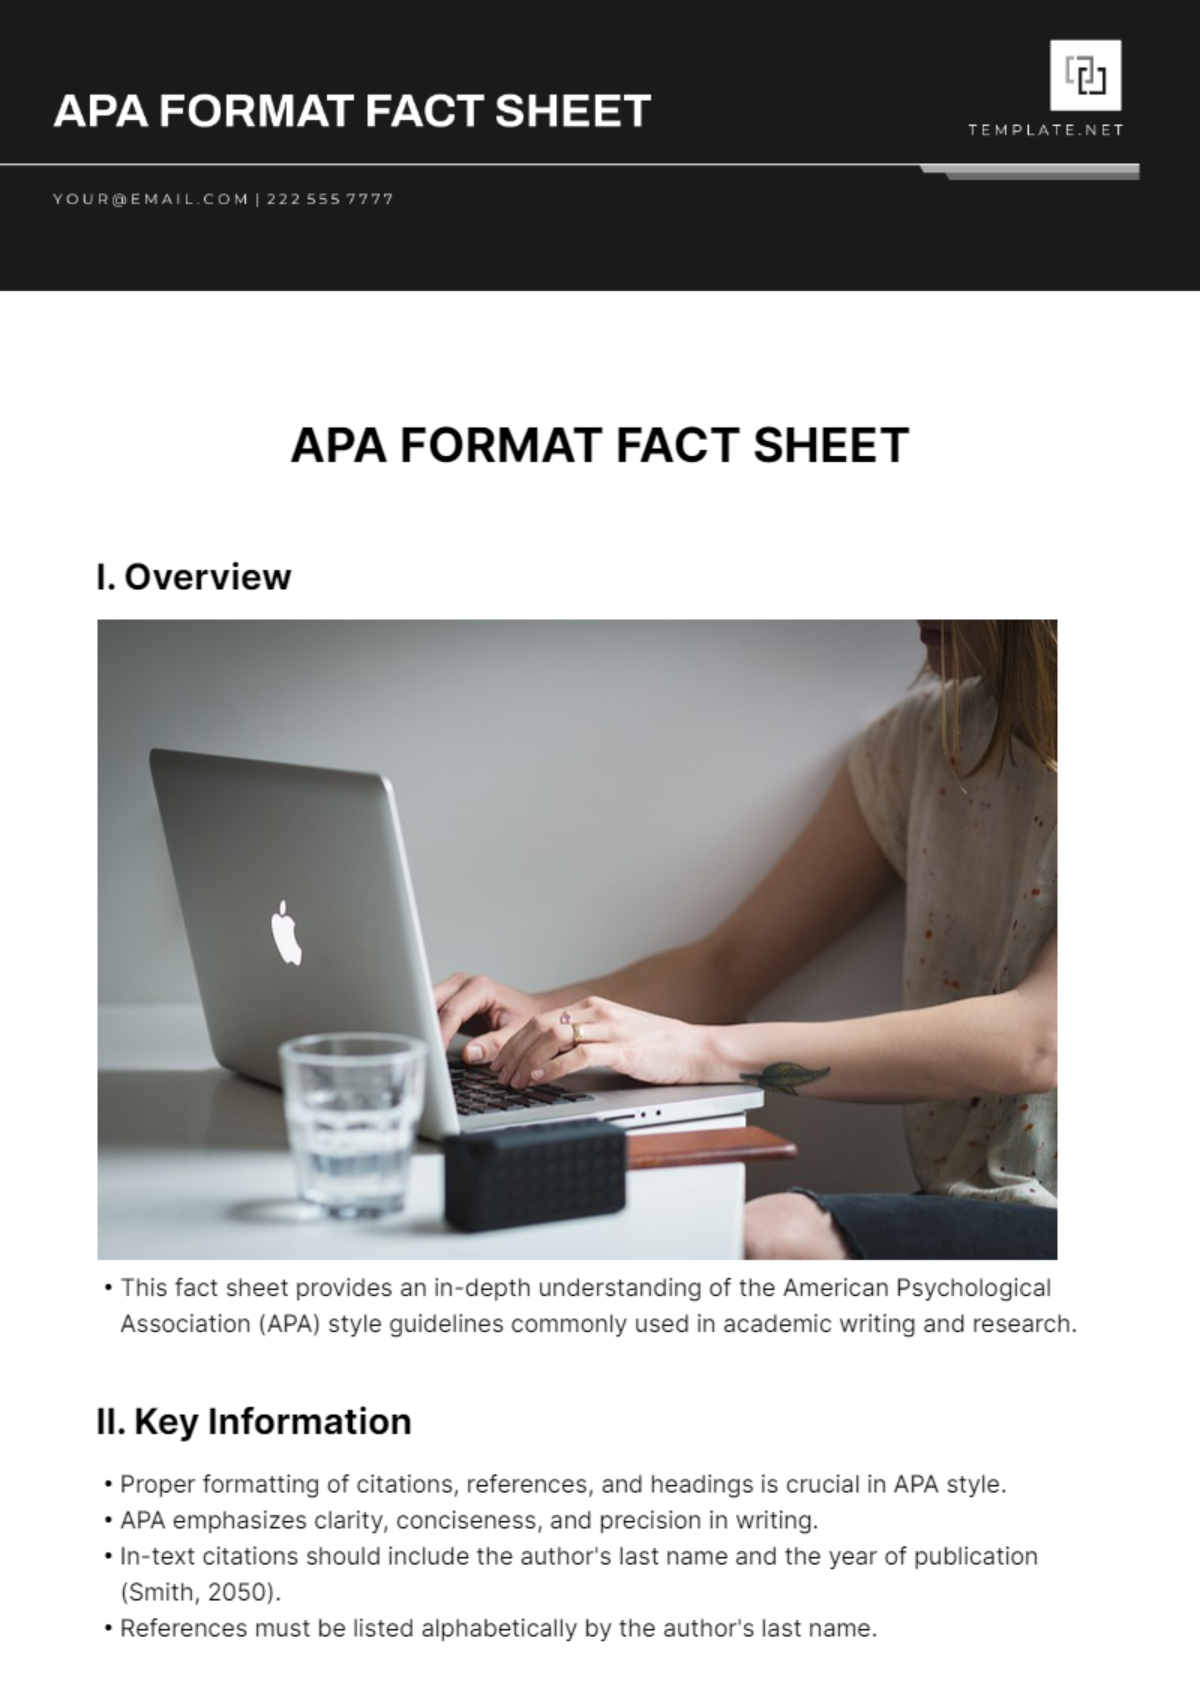 Free APA Format Fact Sheet Template